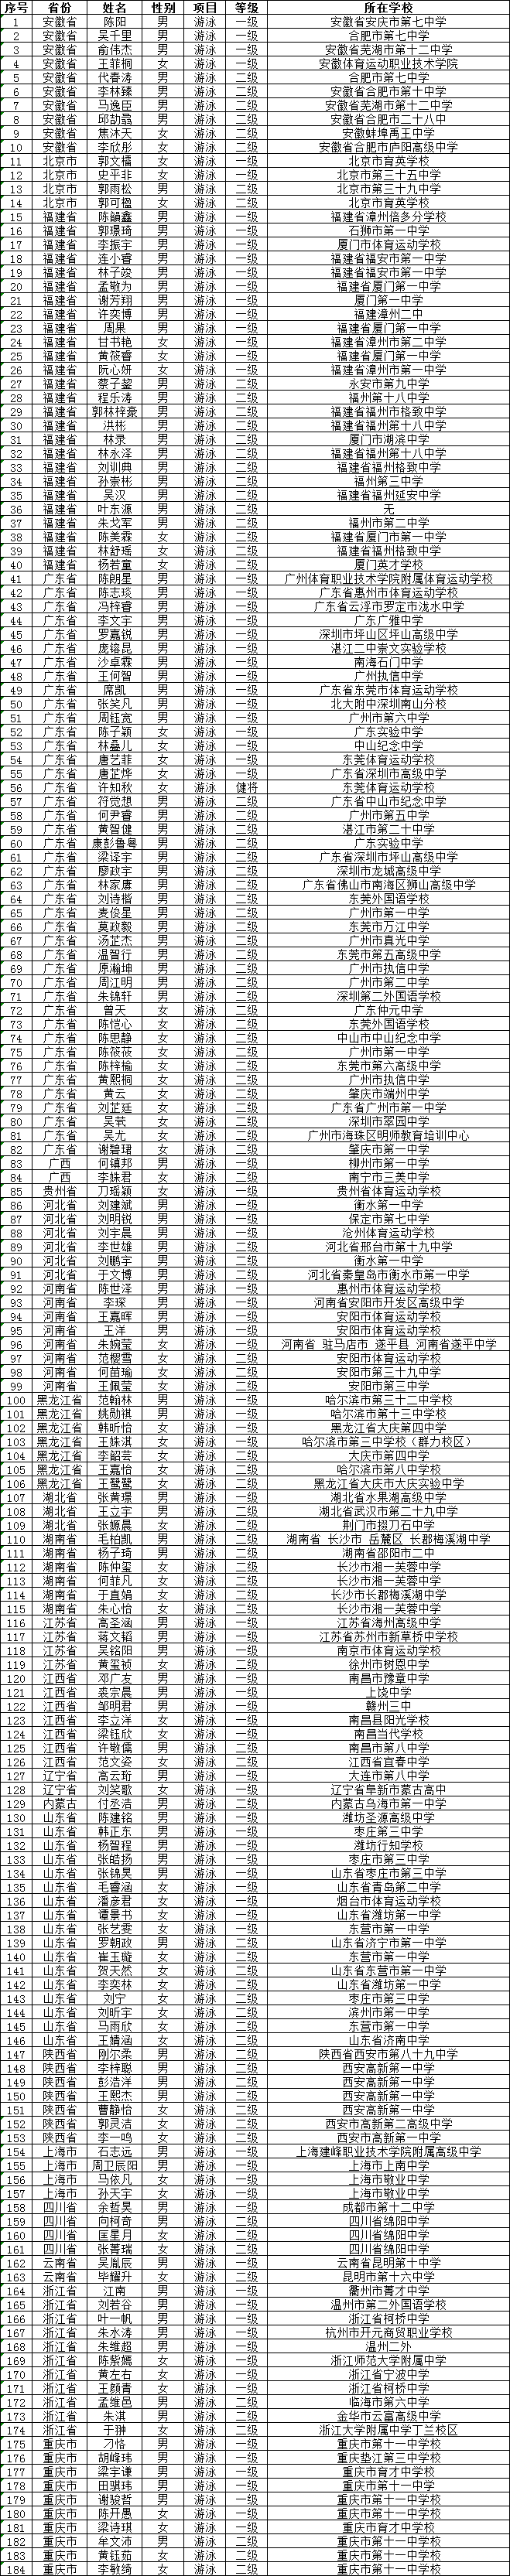 广东财经大学2021年高水平运动队招生报名初审合格名单公示